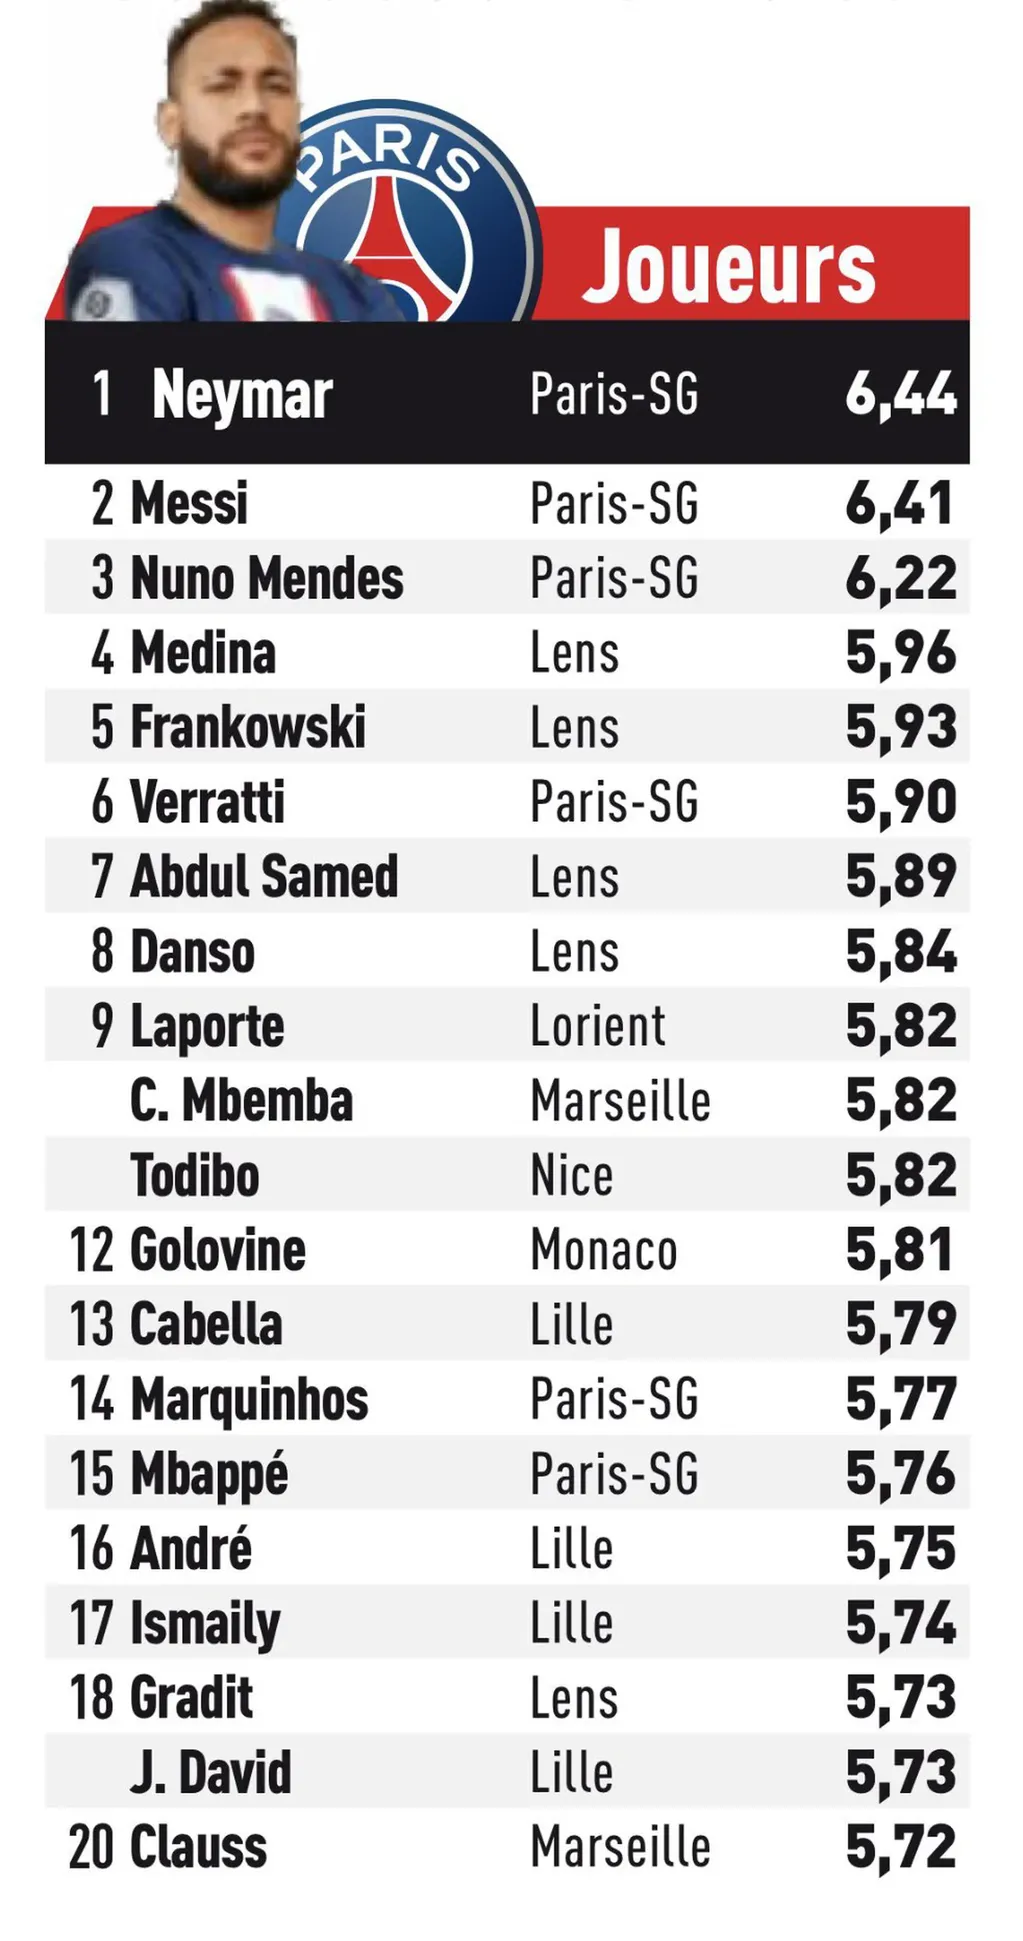 Las estadísticas del astro rosarino en el PSG son muy distintas a lo que revelan los medios. L'Equipe.